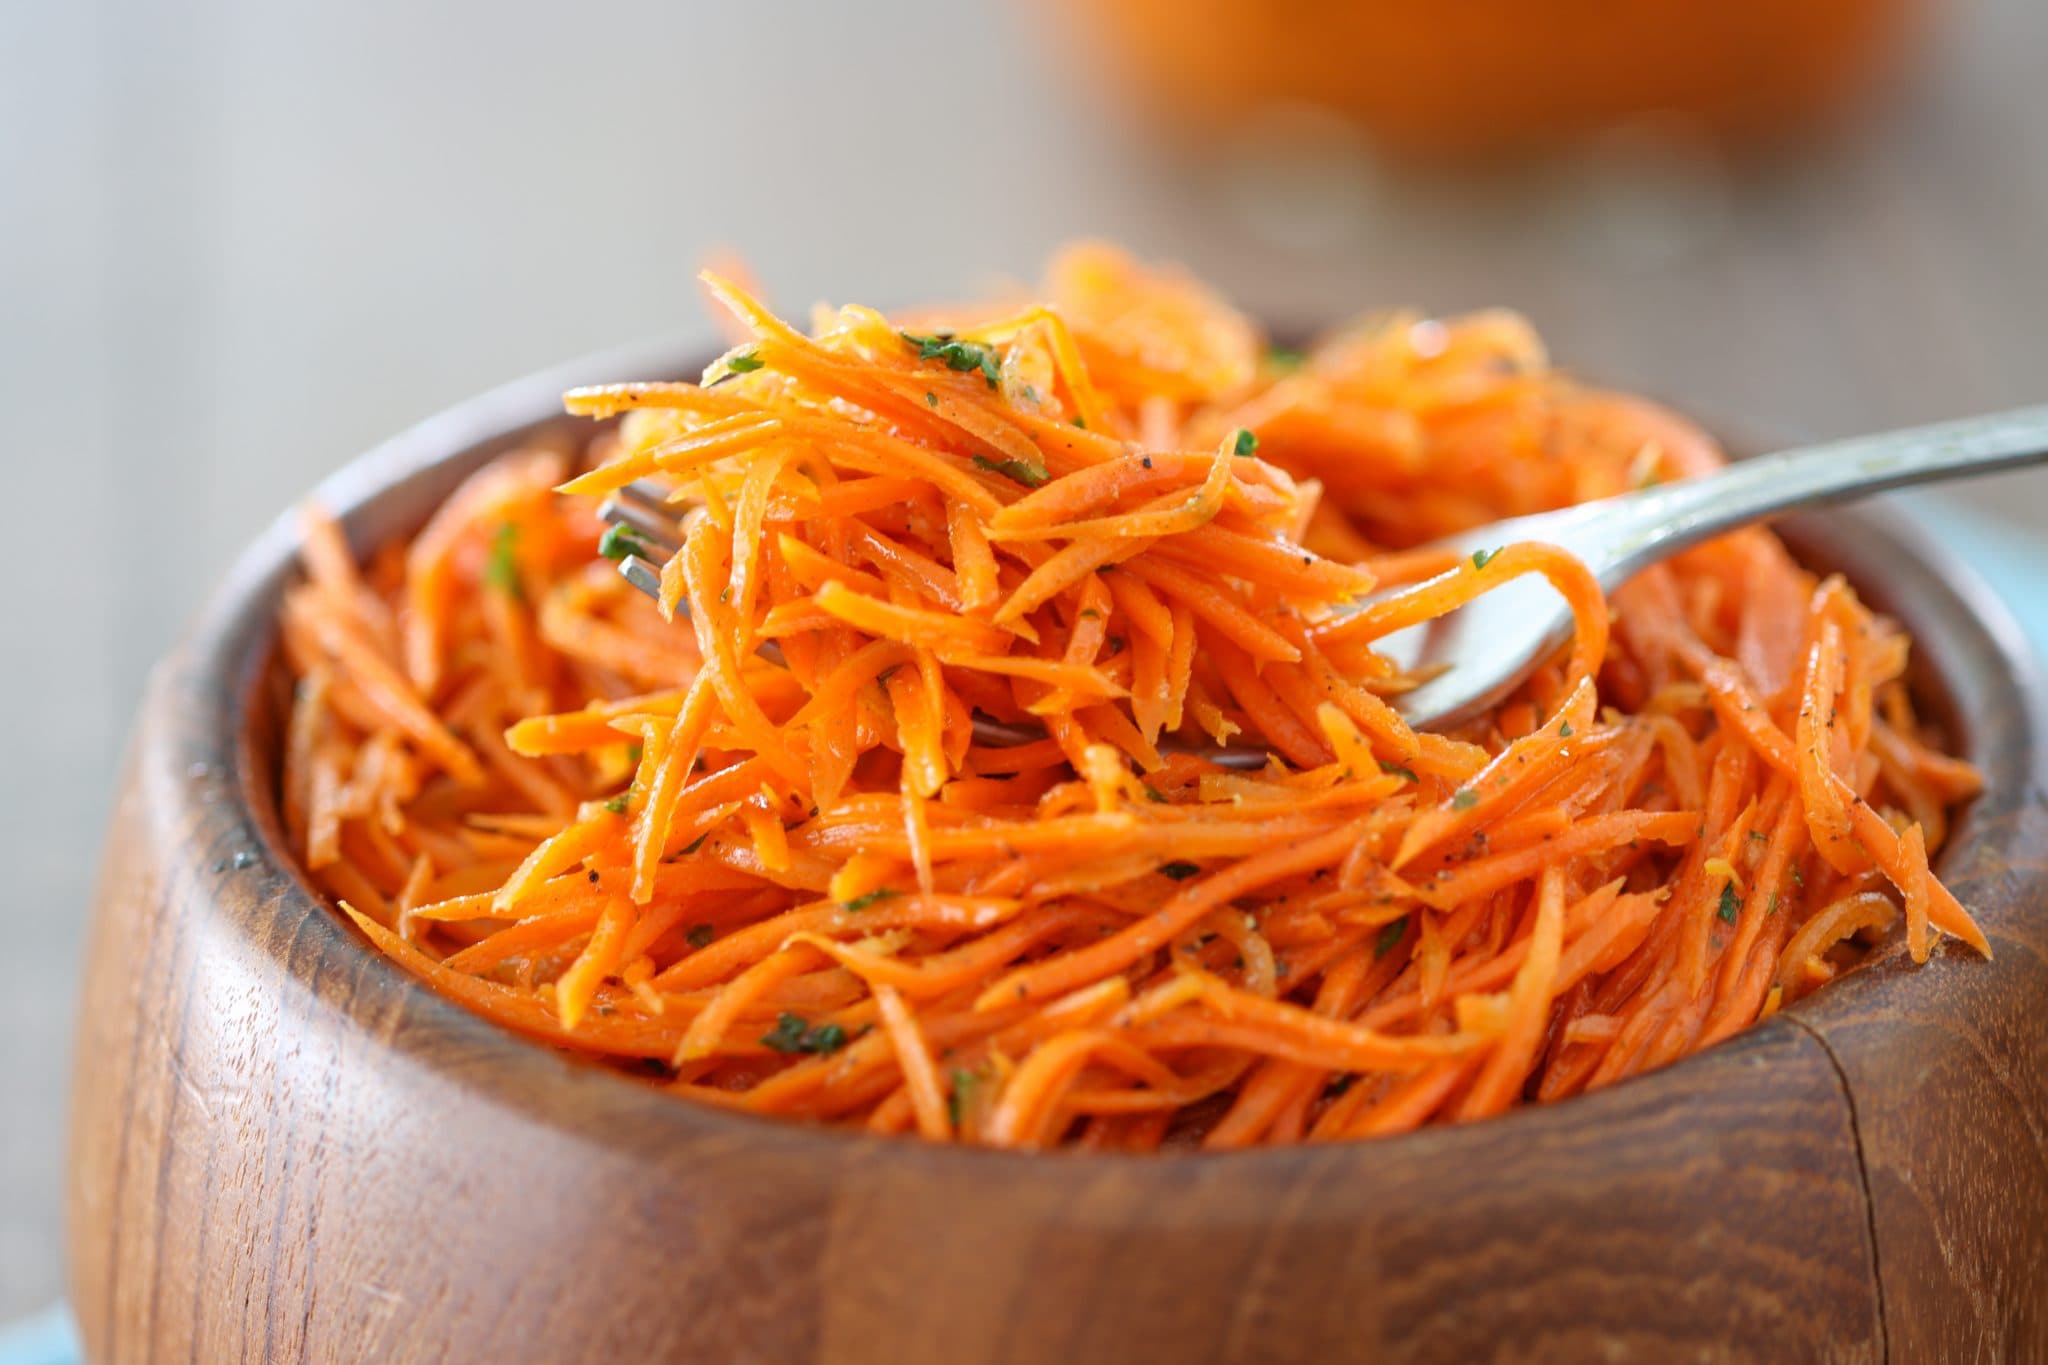 Korean Carrot salad - Recipe Seasoning graters and shredders